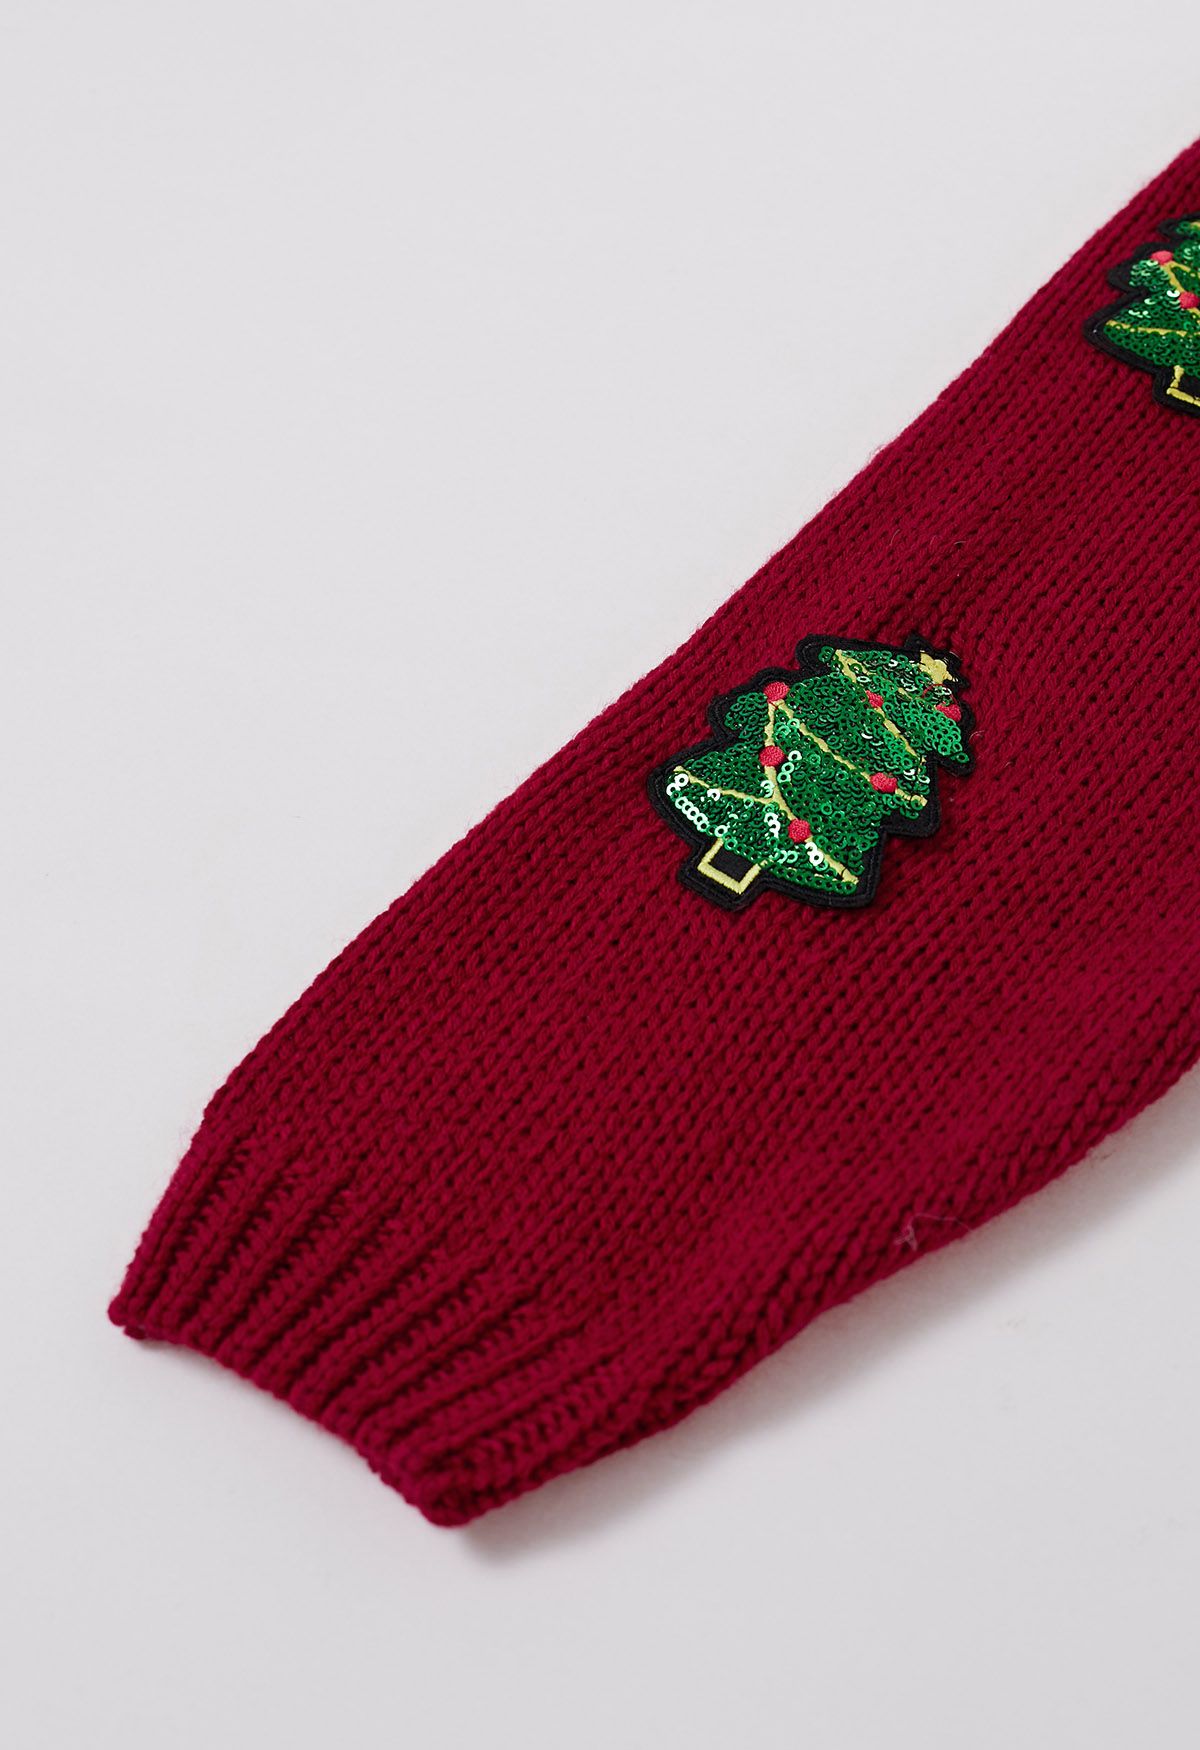 Cárdigan con botones y parche de árbol de Navidad con lentejuelas en rojo